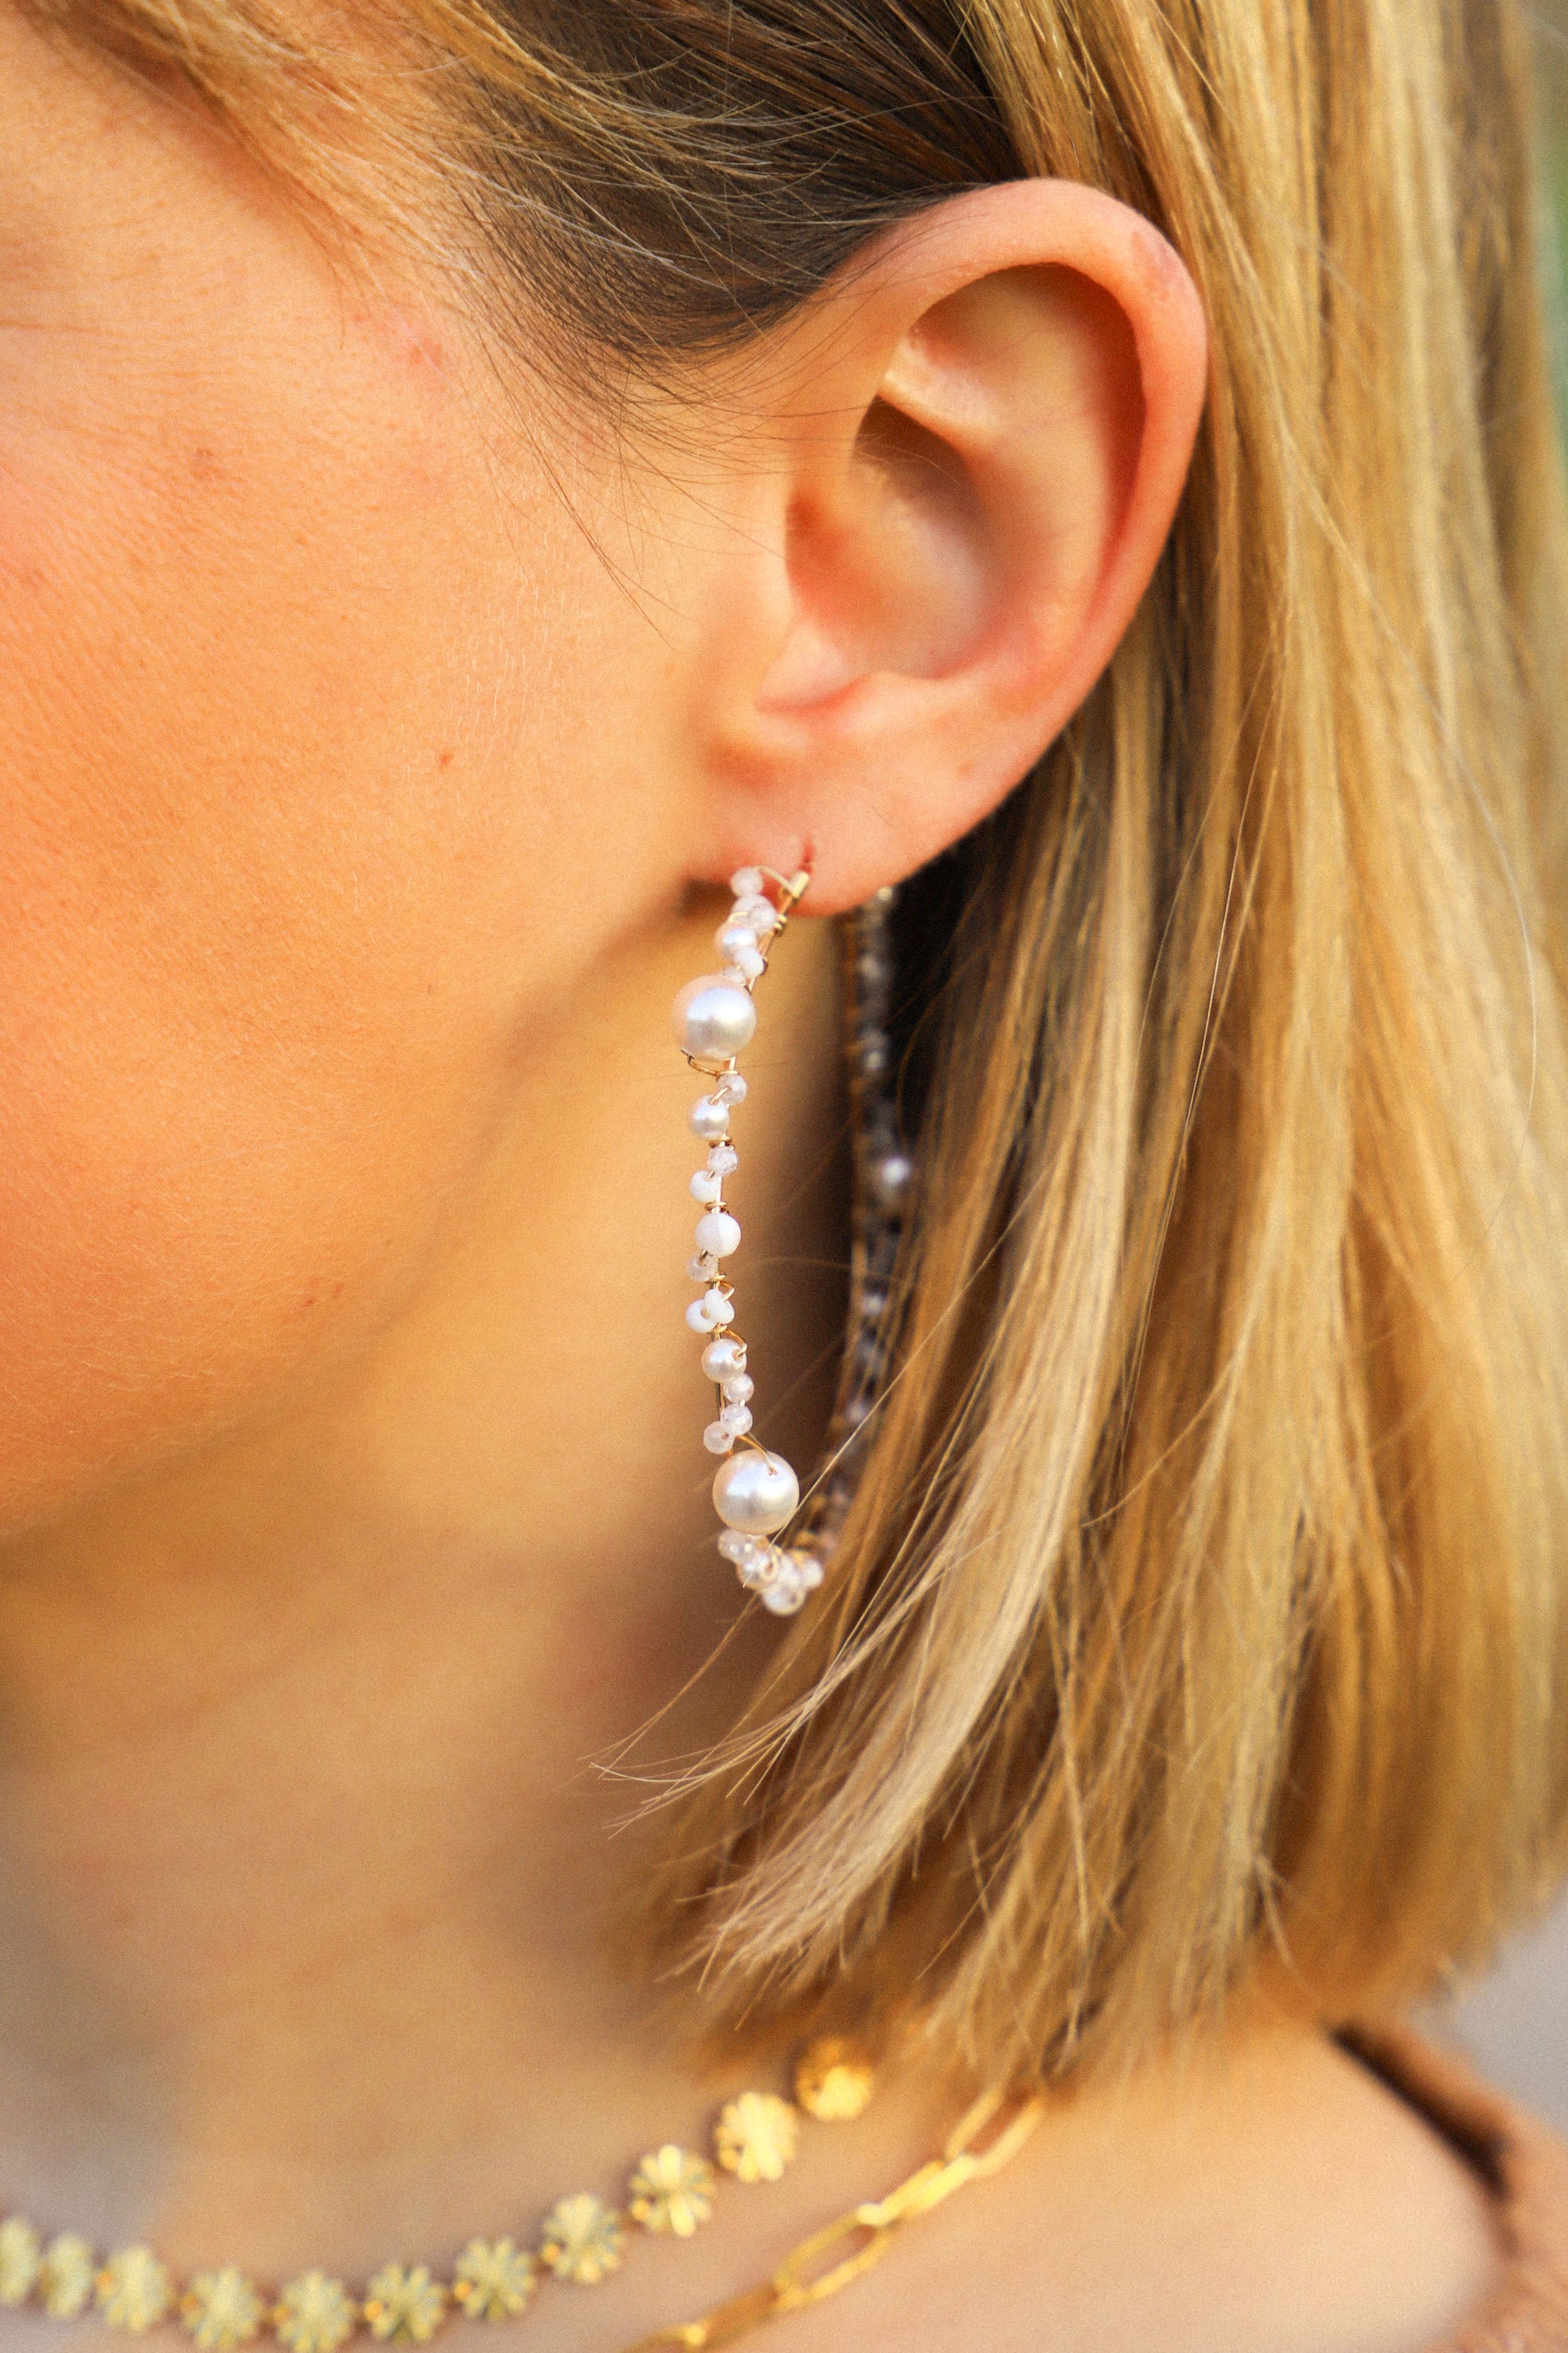 Boucles d'oreilles Jude, de grandes créoles ornées de perles blanches et de nacres.